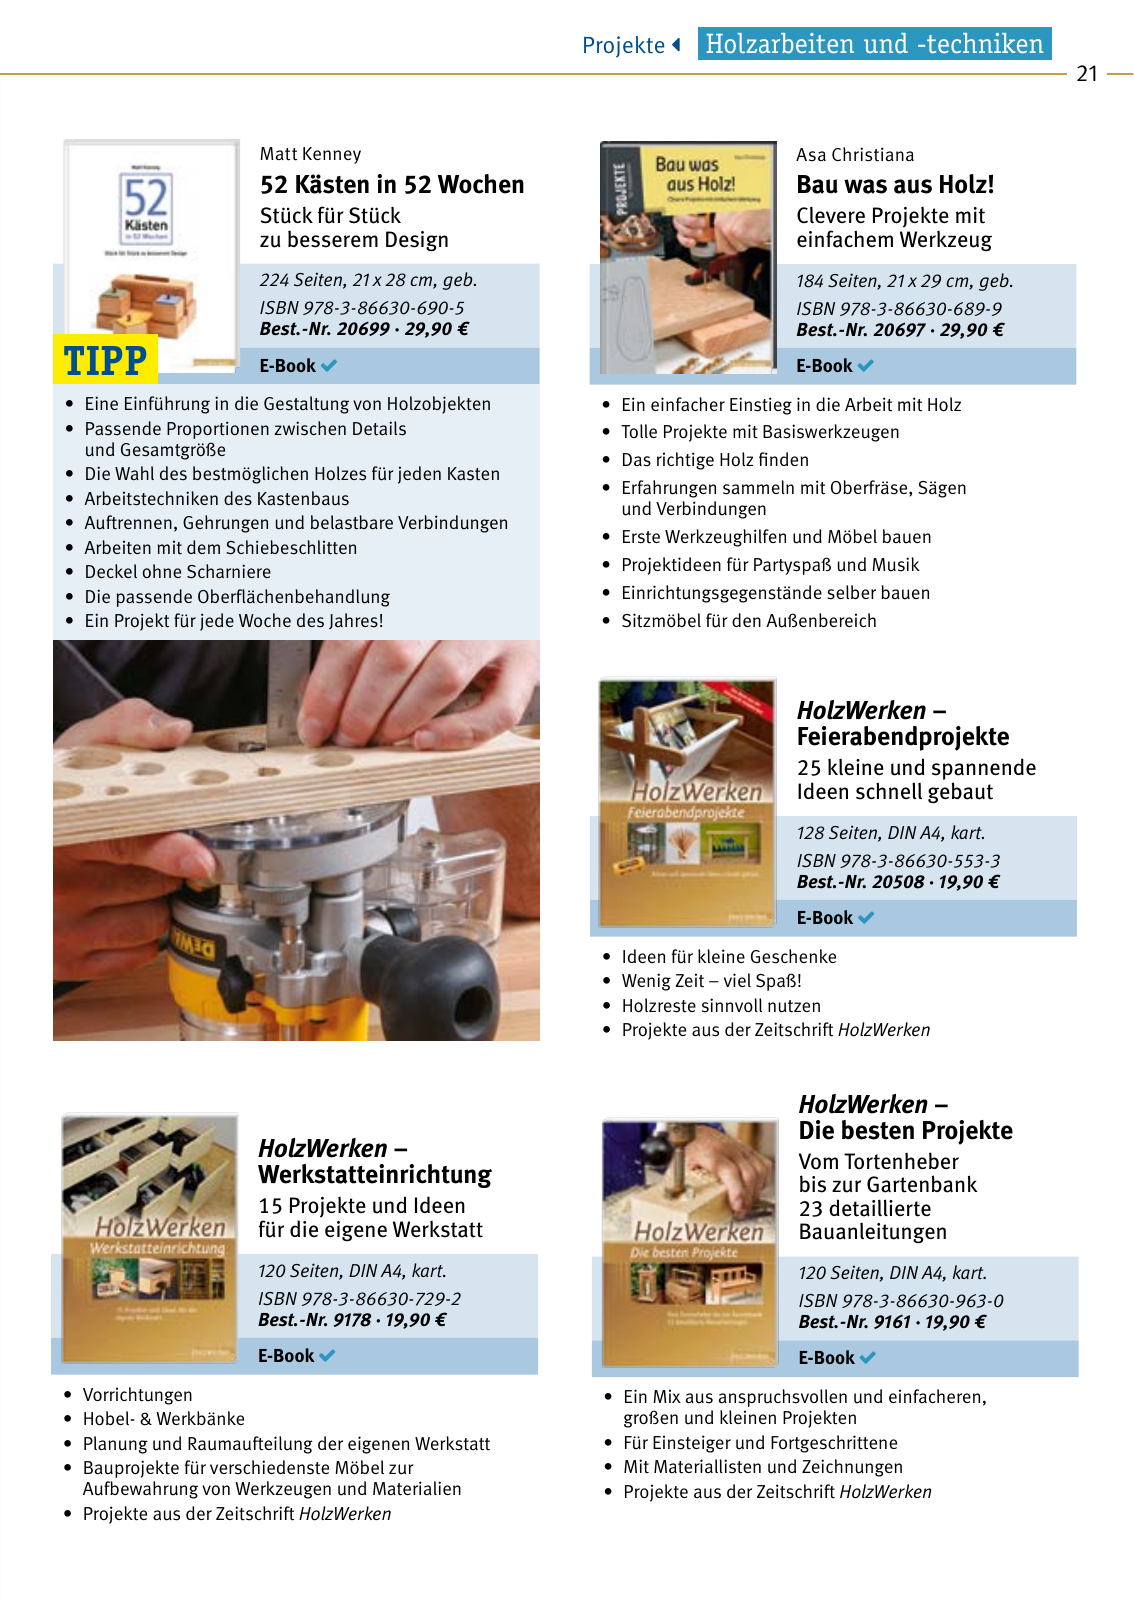 Vorschau HolzWerken Katalog 2021 Seite 21